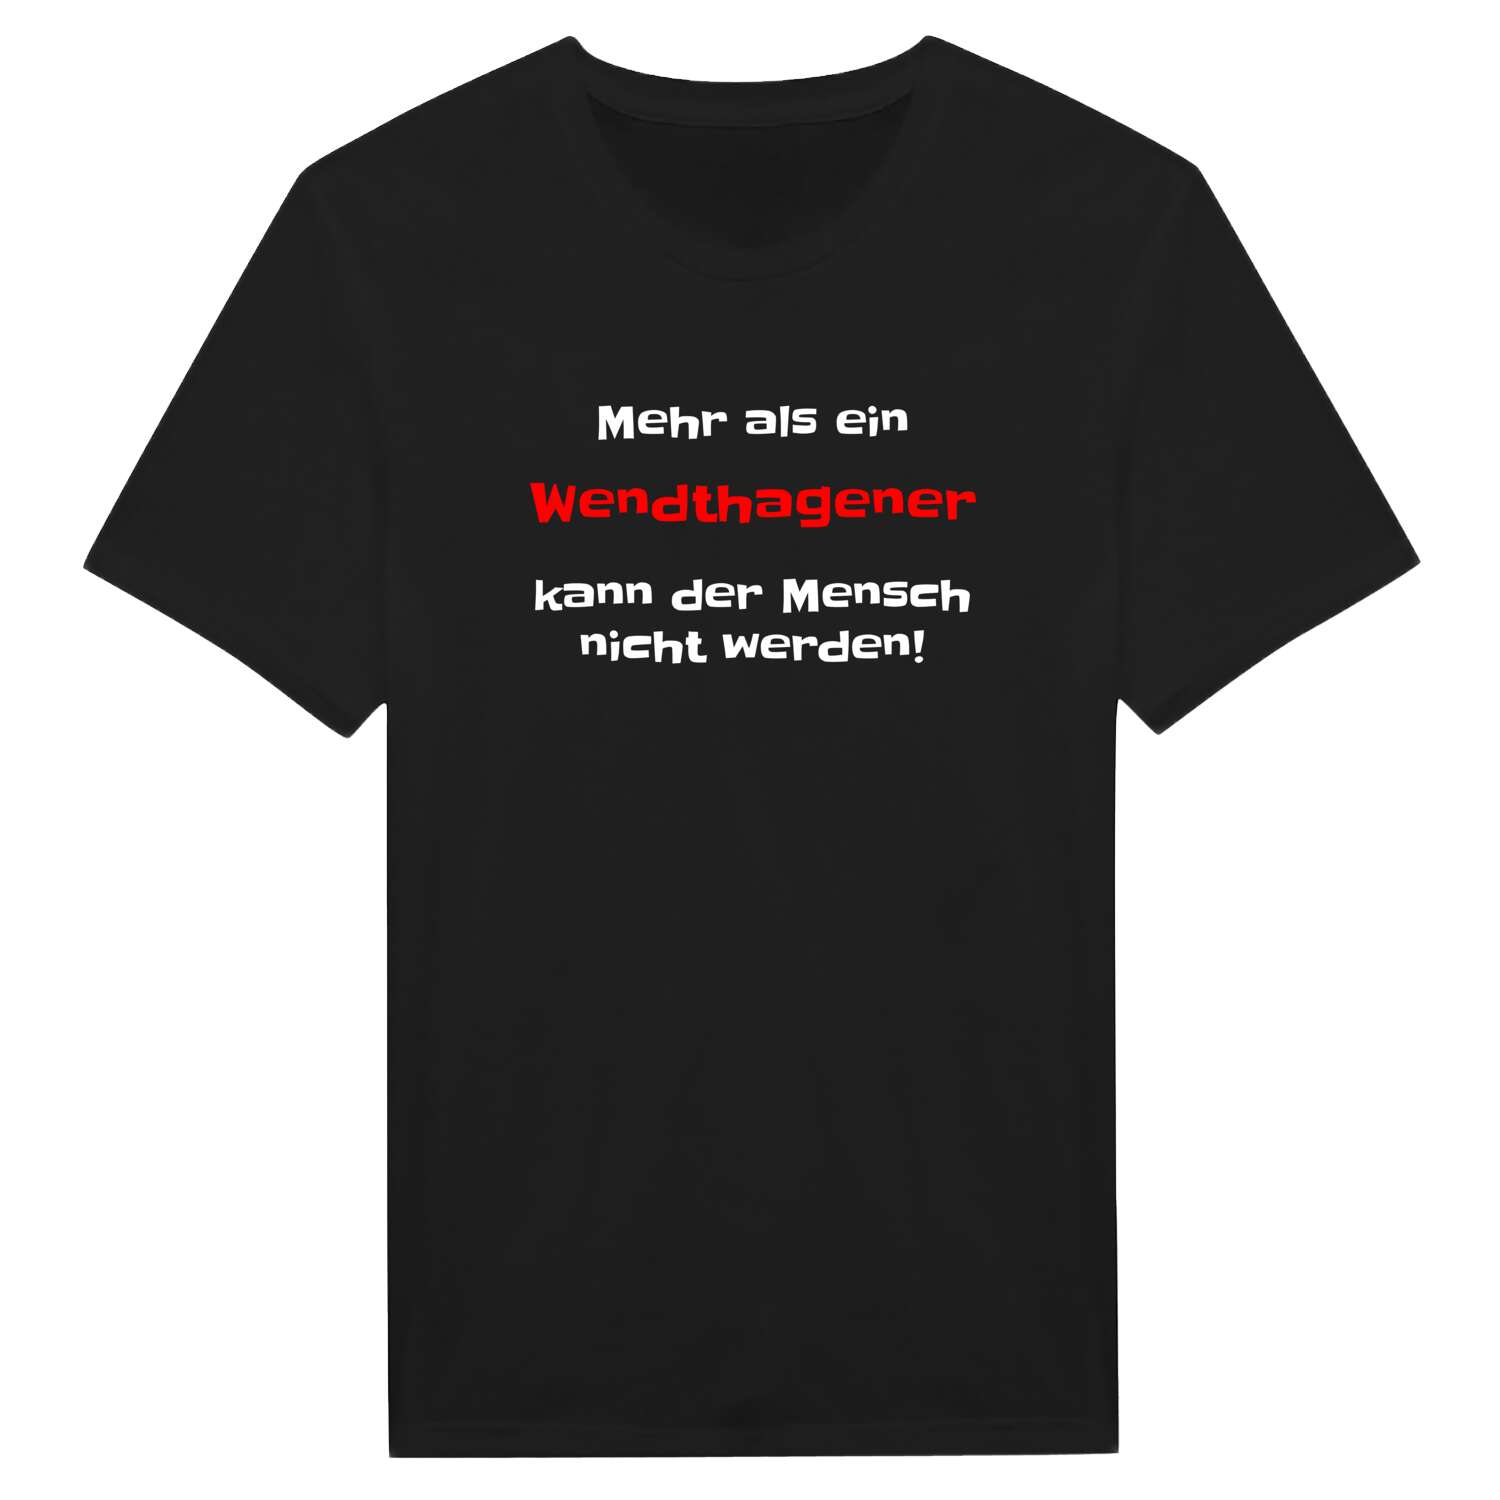 Wendthagen T-Shirt »Mehr als ein«